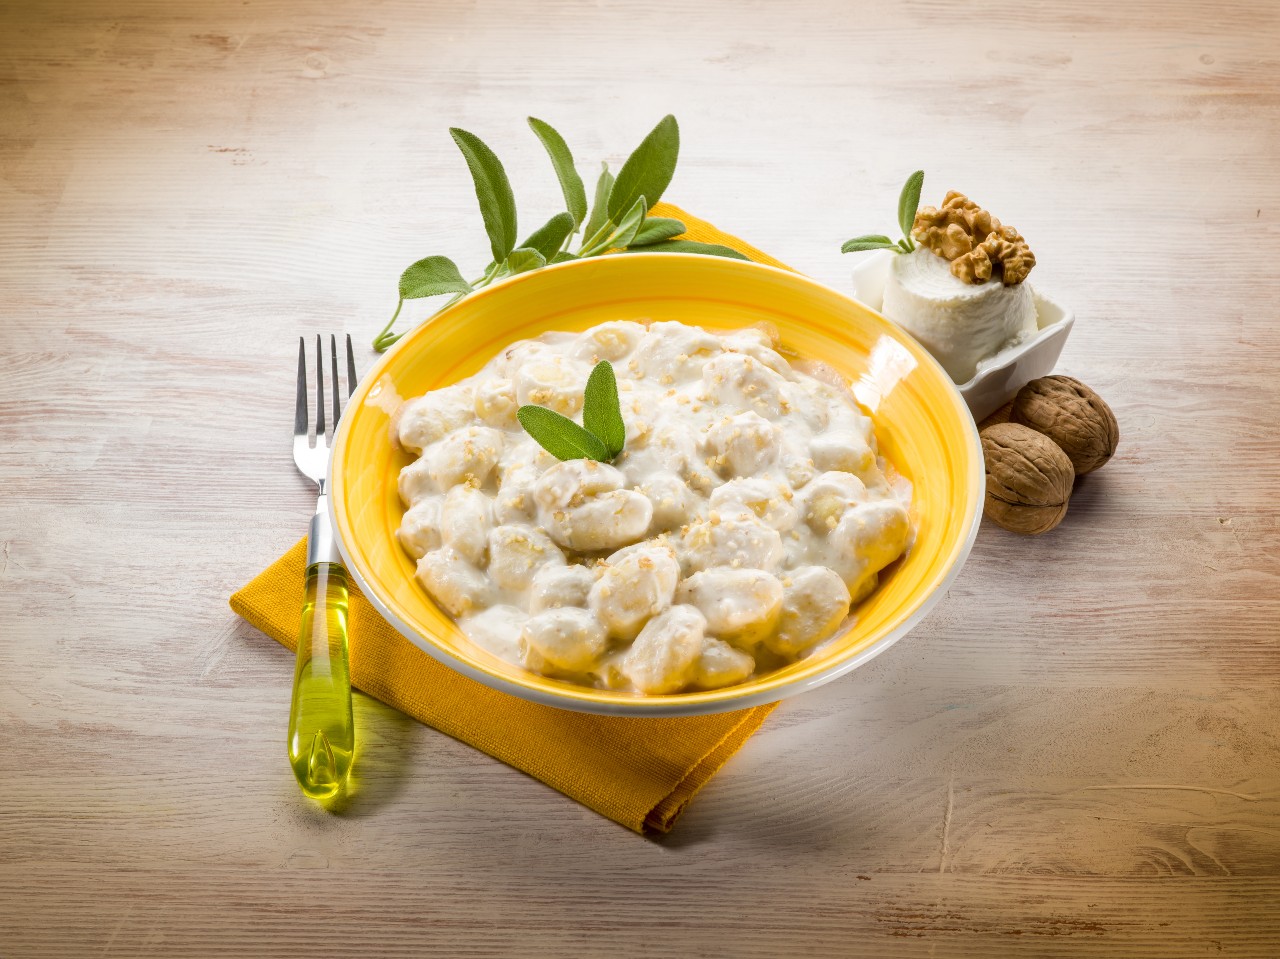 gnocchi-con-la-fioreta-food-lifestyle